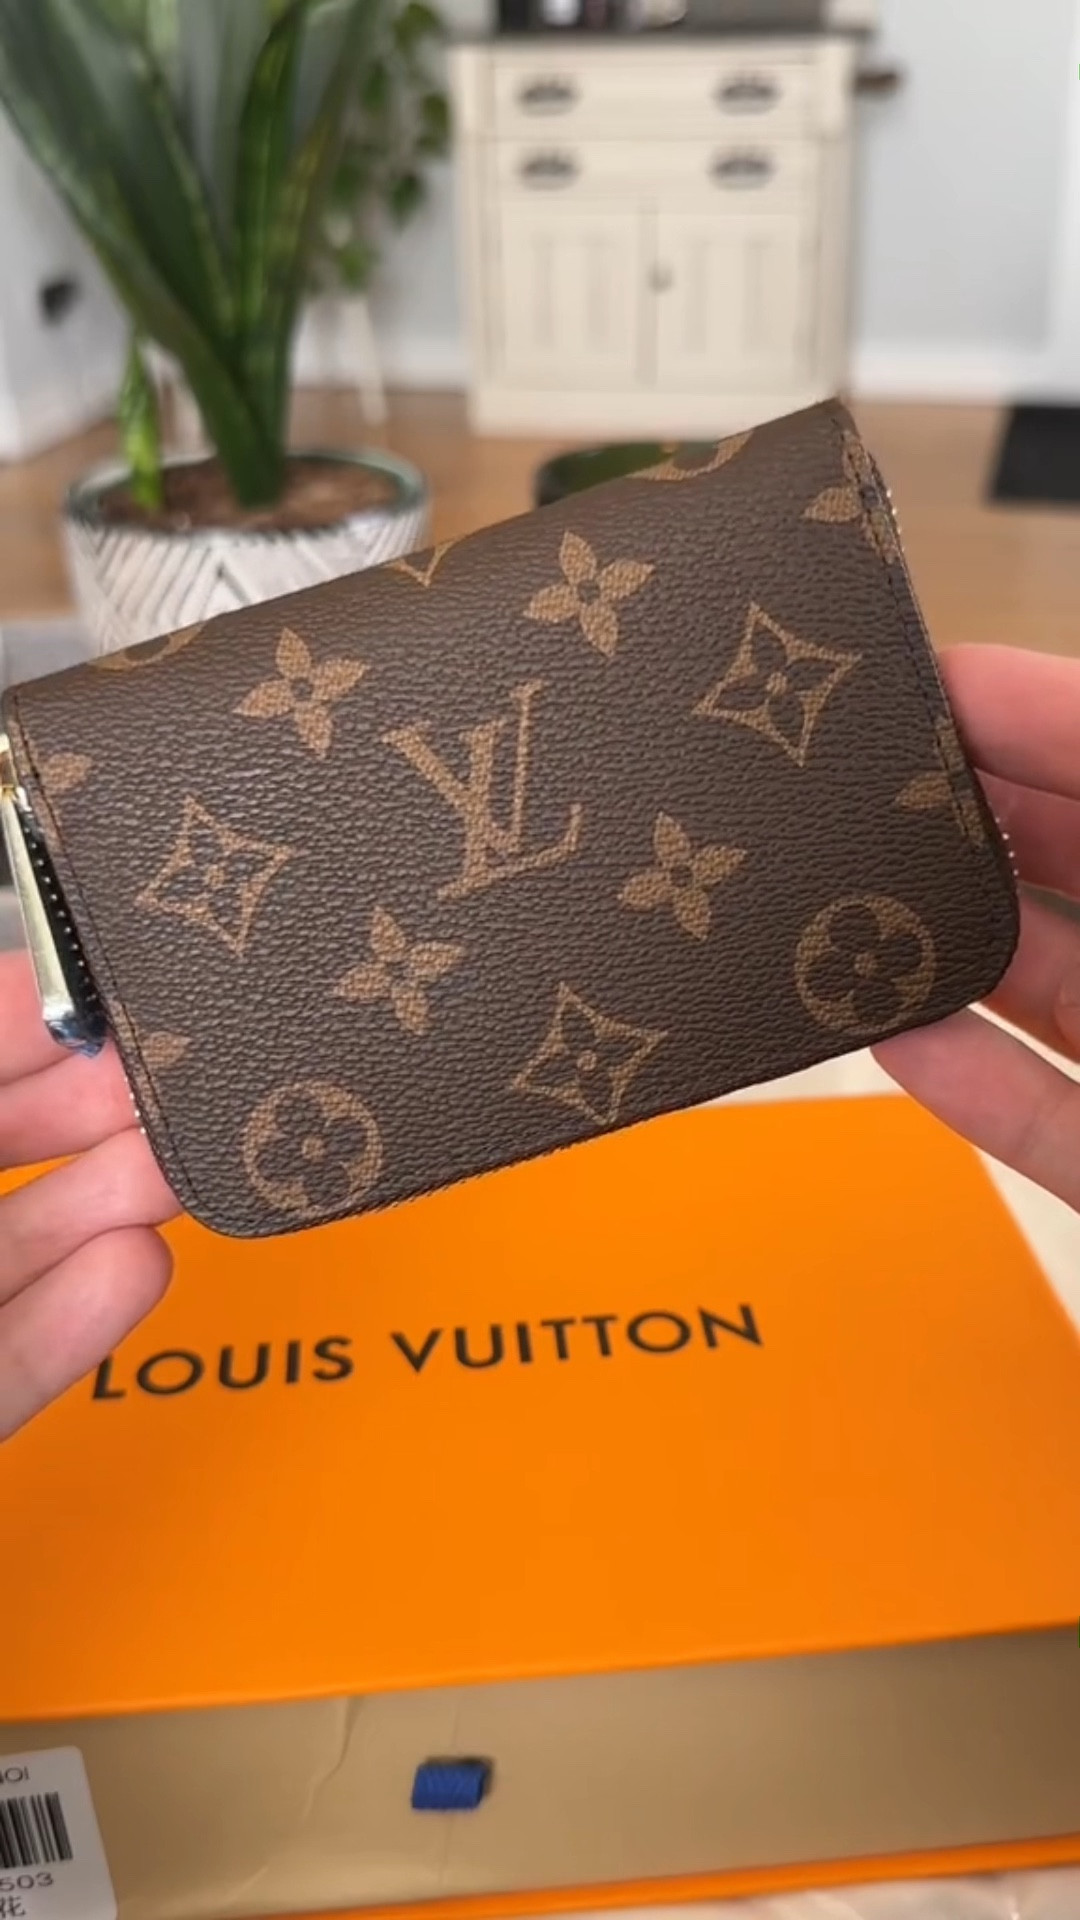 Louis Vuitton Multiple Wallet Damier Graphite Unboxing HD 